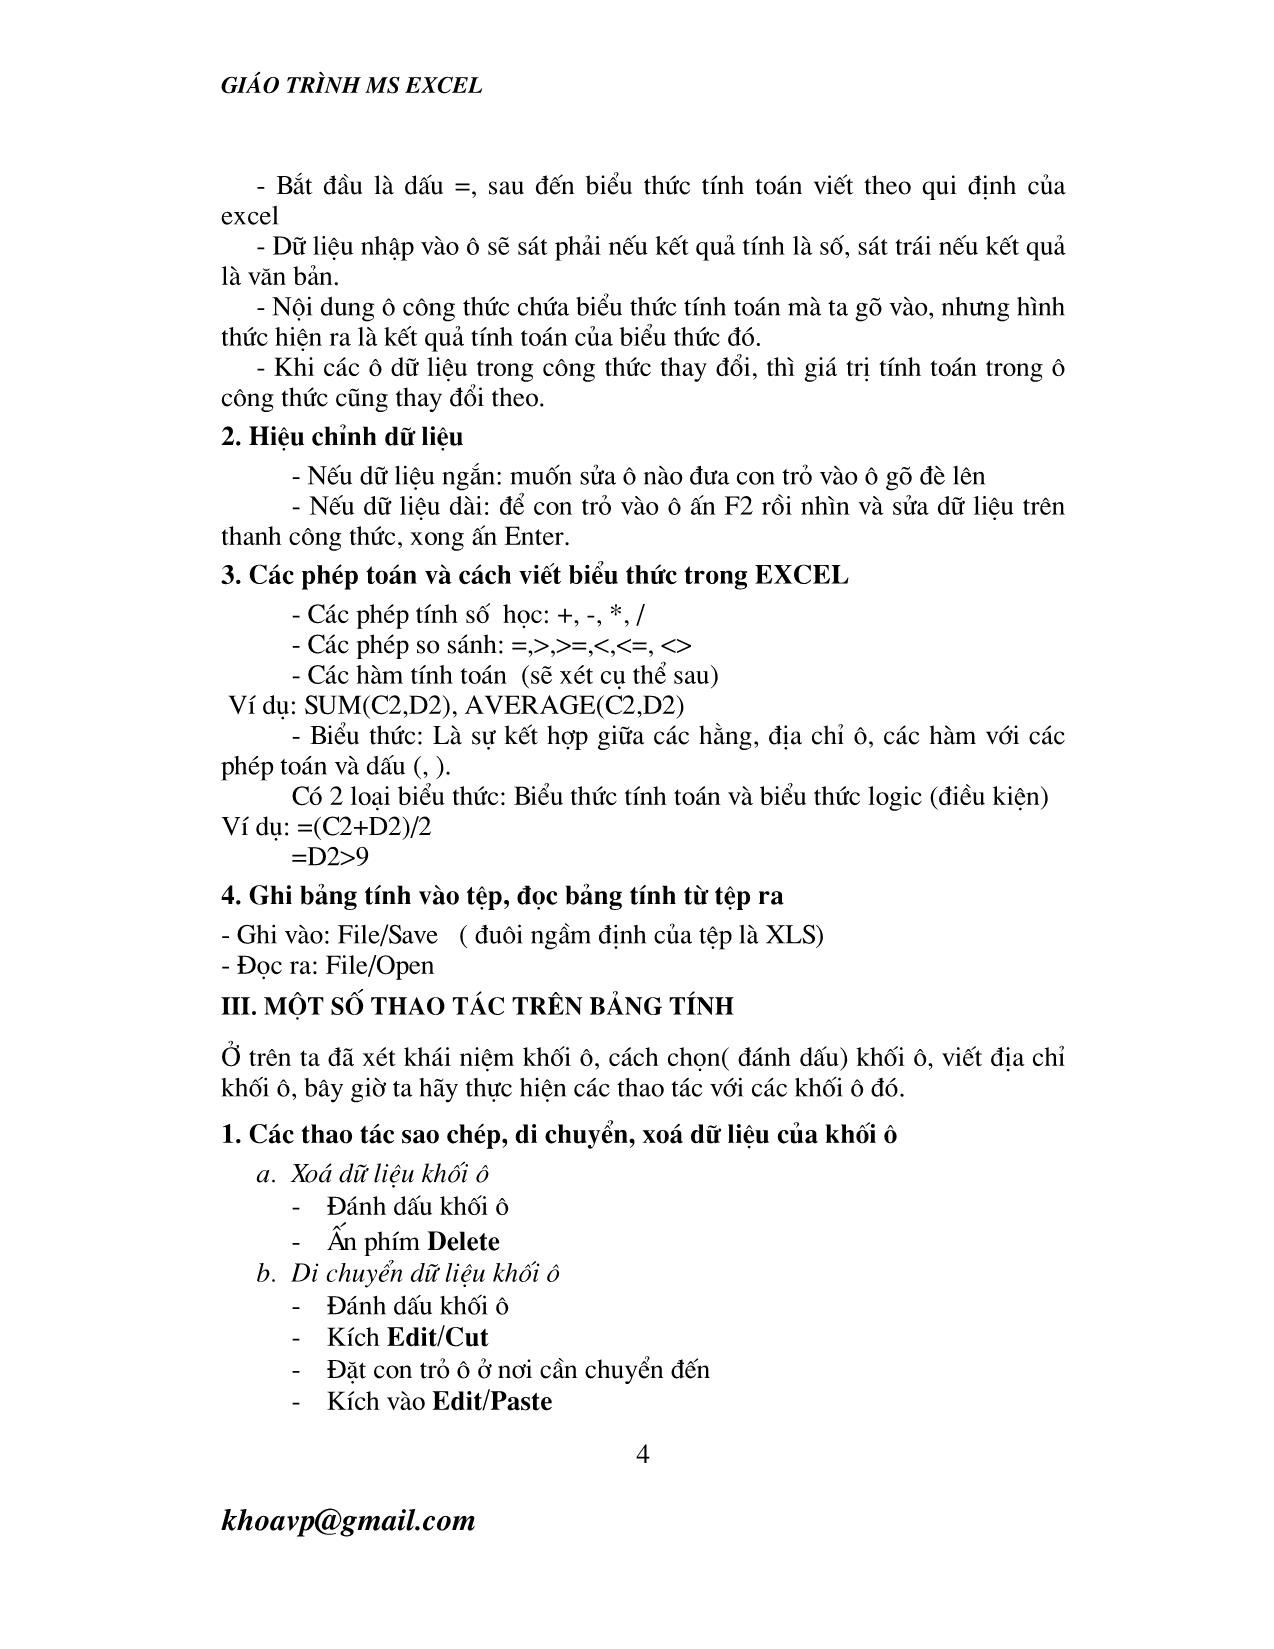 Giáo trình Ms Excel trang 4